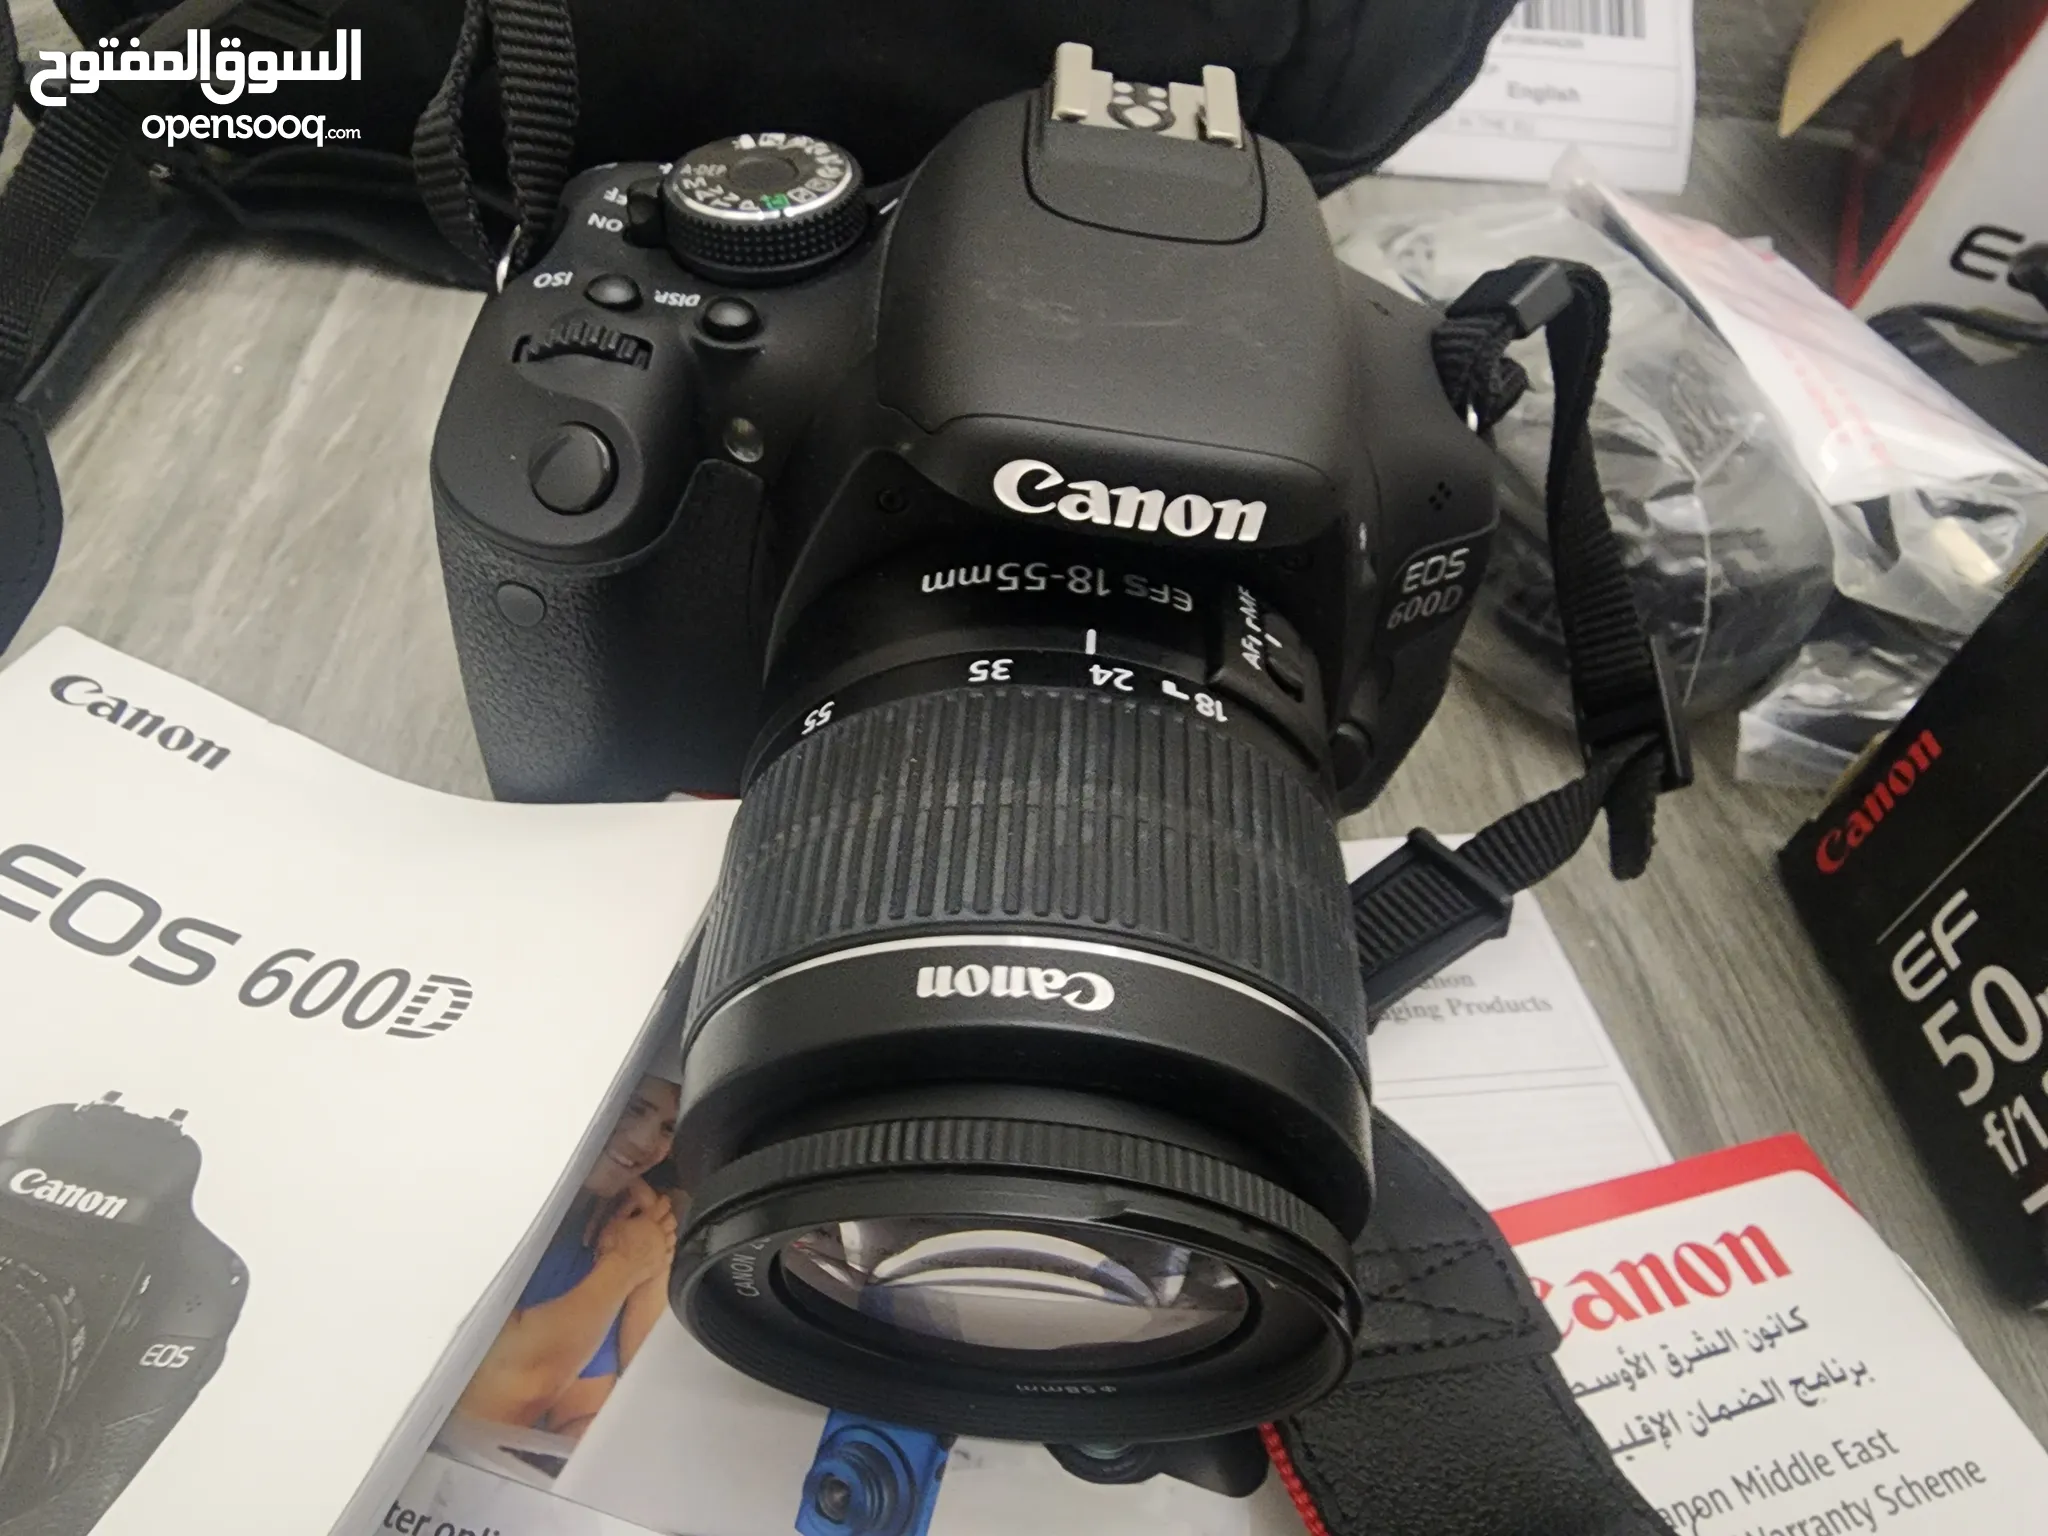 كام كانون للبيع : كاميرا كانون 4000d : 70D : 700D : 600D : 5D : أفضل الأسعار  : الإمارات | السوق المفتوح